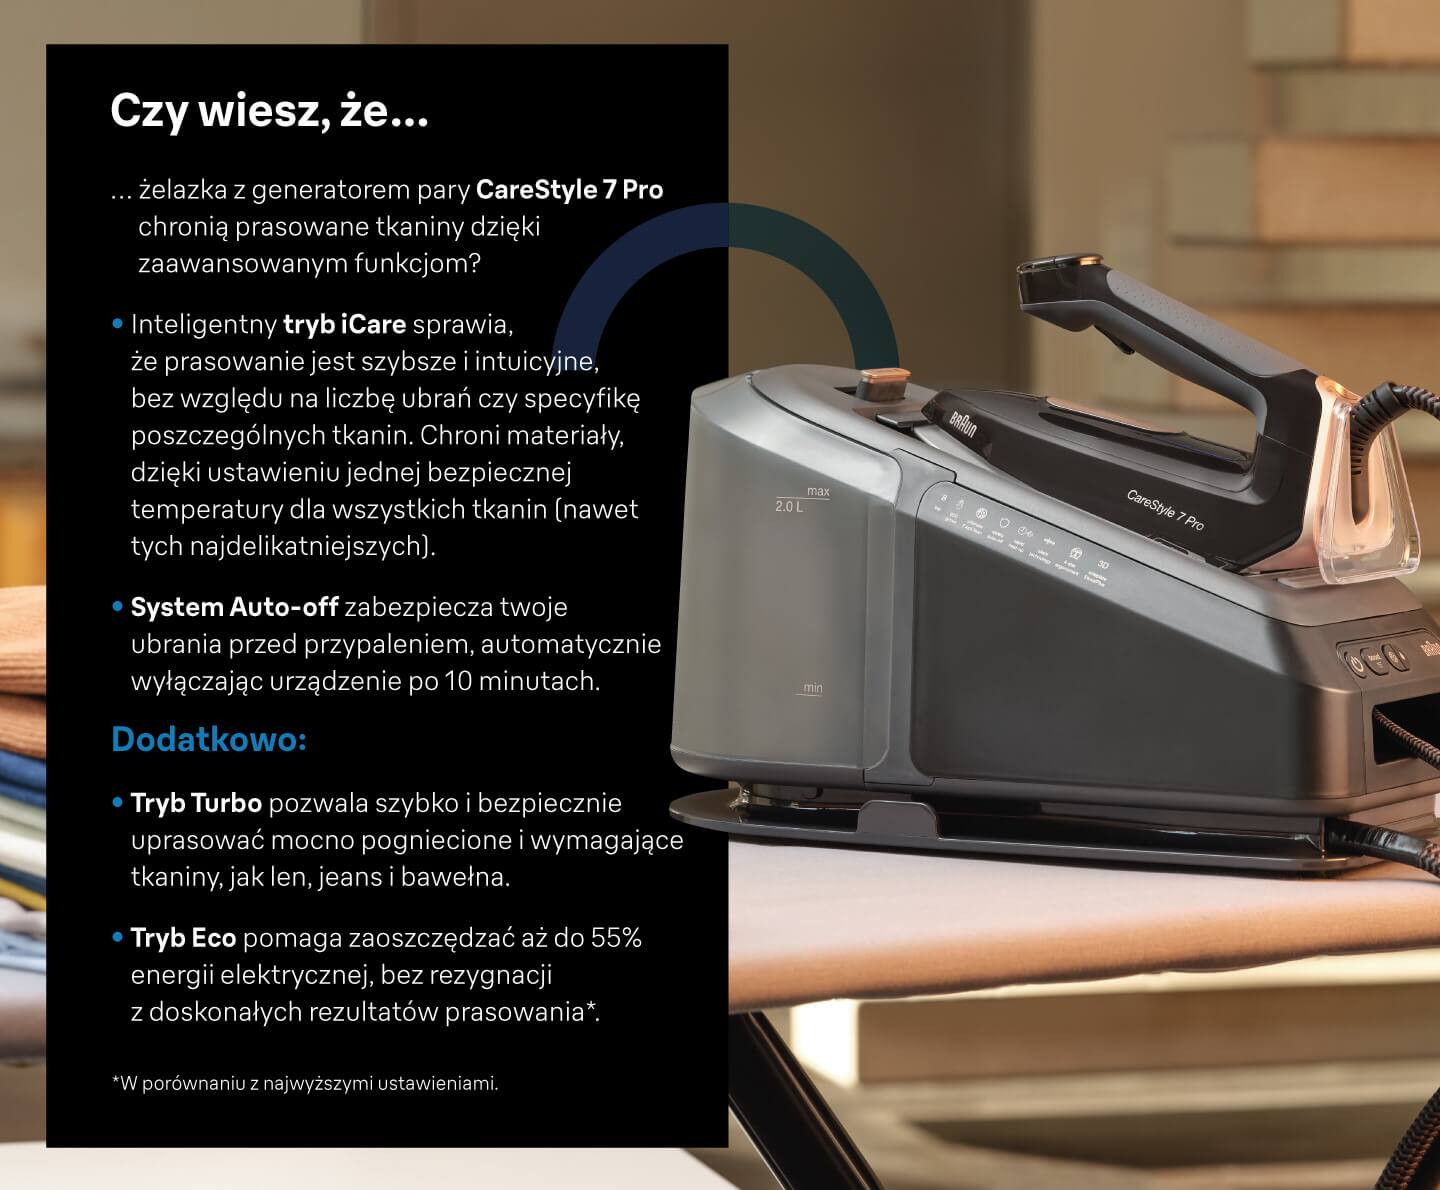 Wyróżnione certyfikatem ergonomii: Seria Braun CareStyle 7 PRO to pierwsze na świecie żelazka z certyfikatem ergonomii - infografika